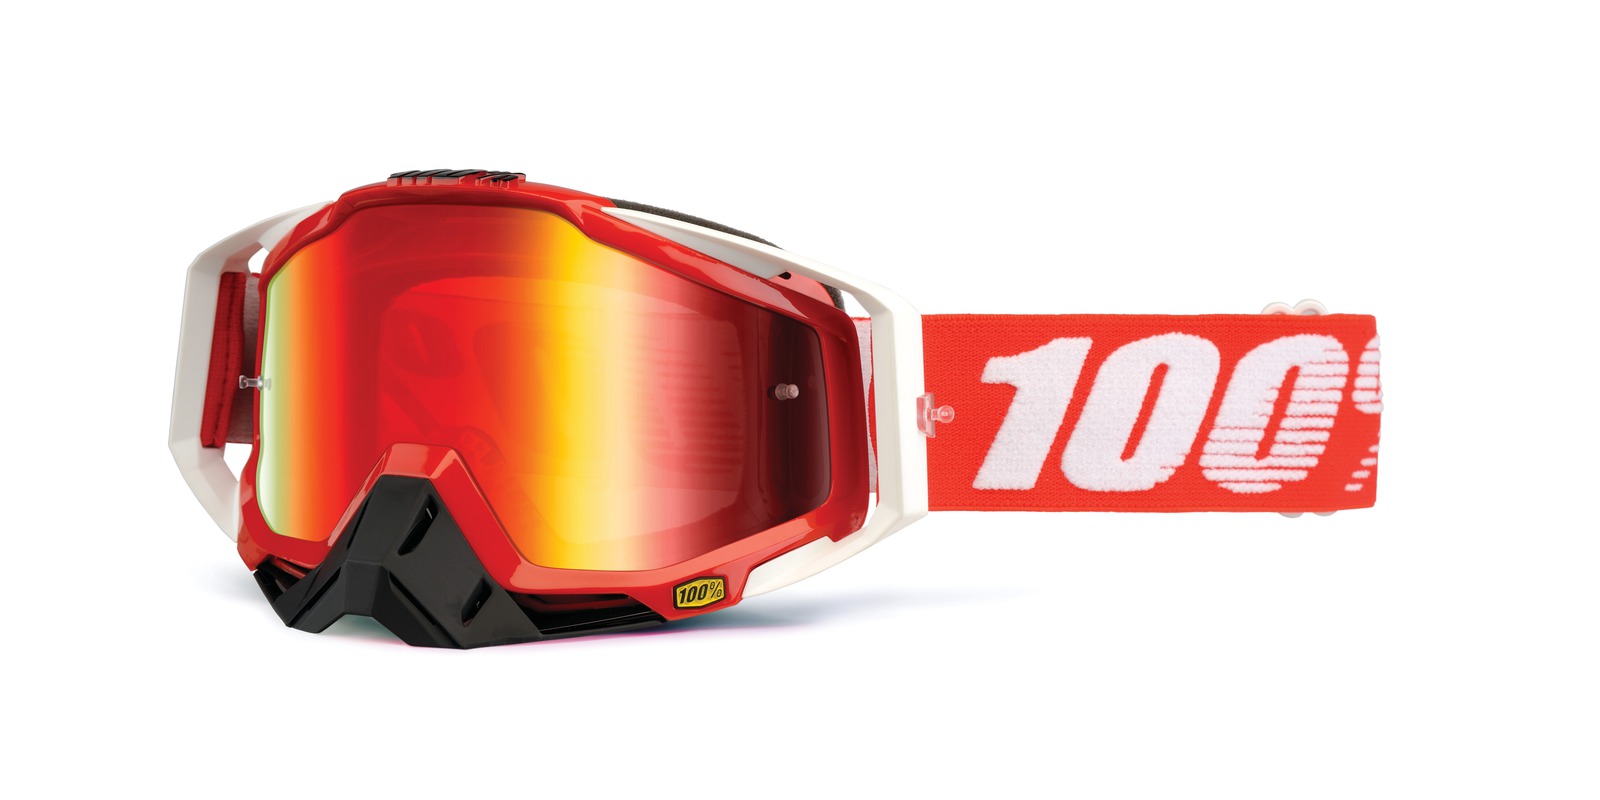 brýle Racecraft Fire Red, 100% - USA (červené chrom plexi + čiré plexi + chránič nosu +20 strhávaček)